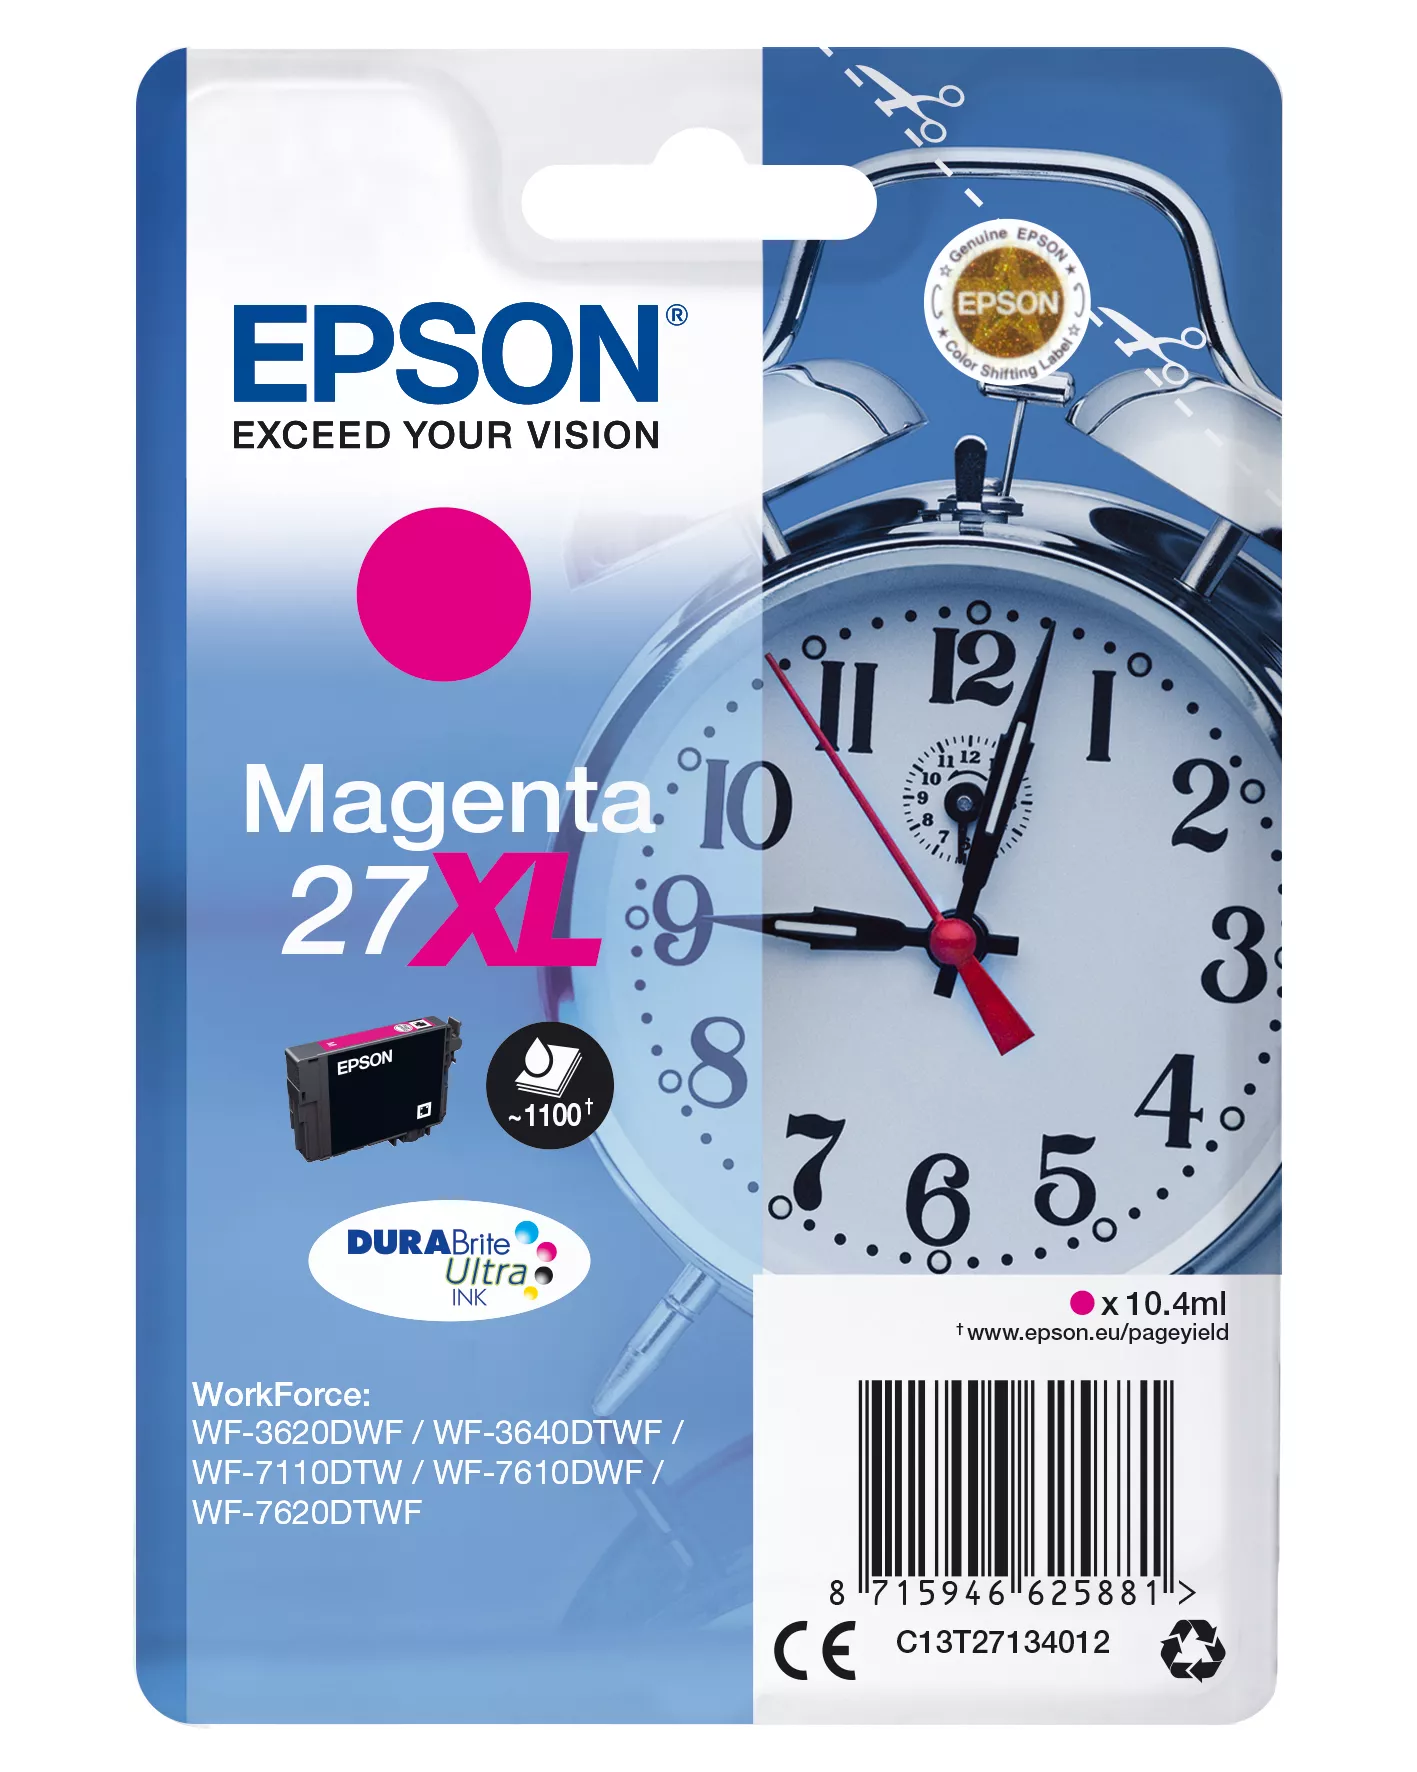 Achat EPSON 27XL cartouche d encre magenta haute capacité 10 - 8715946625881